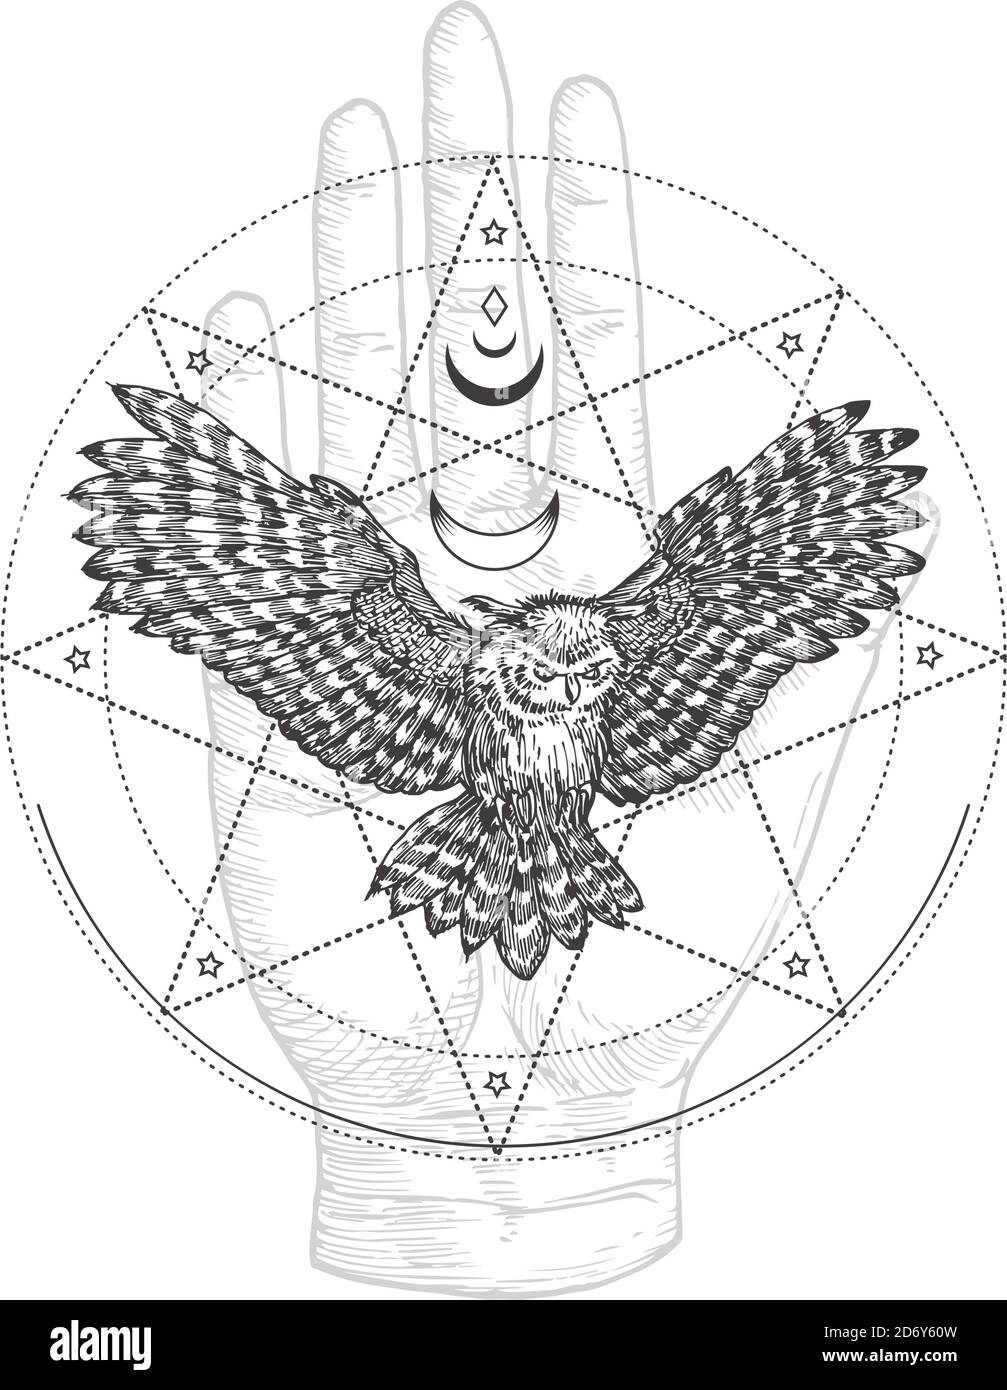 Abstraktes Okkult-Symbol, Vintage-Logo oder Tattoo-Vorlage. Handgezeichnete fliegende schwarze Eule und Handfläche Hand Skizze Symbol und geometrische mystische Magie Stock Vektor